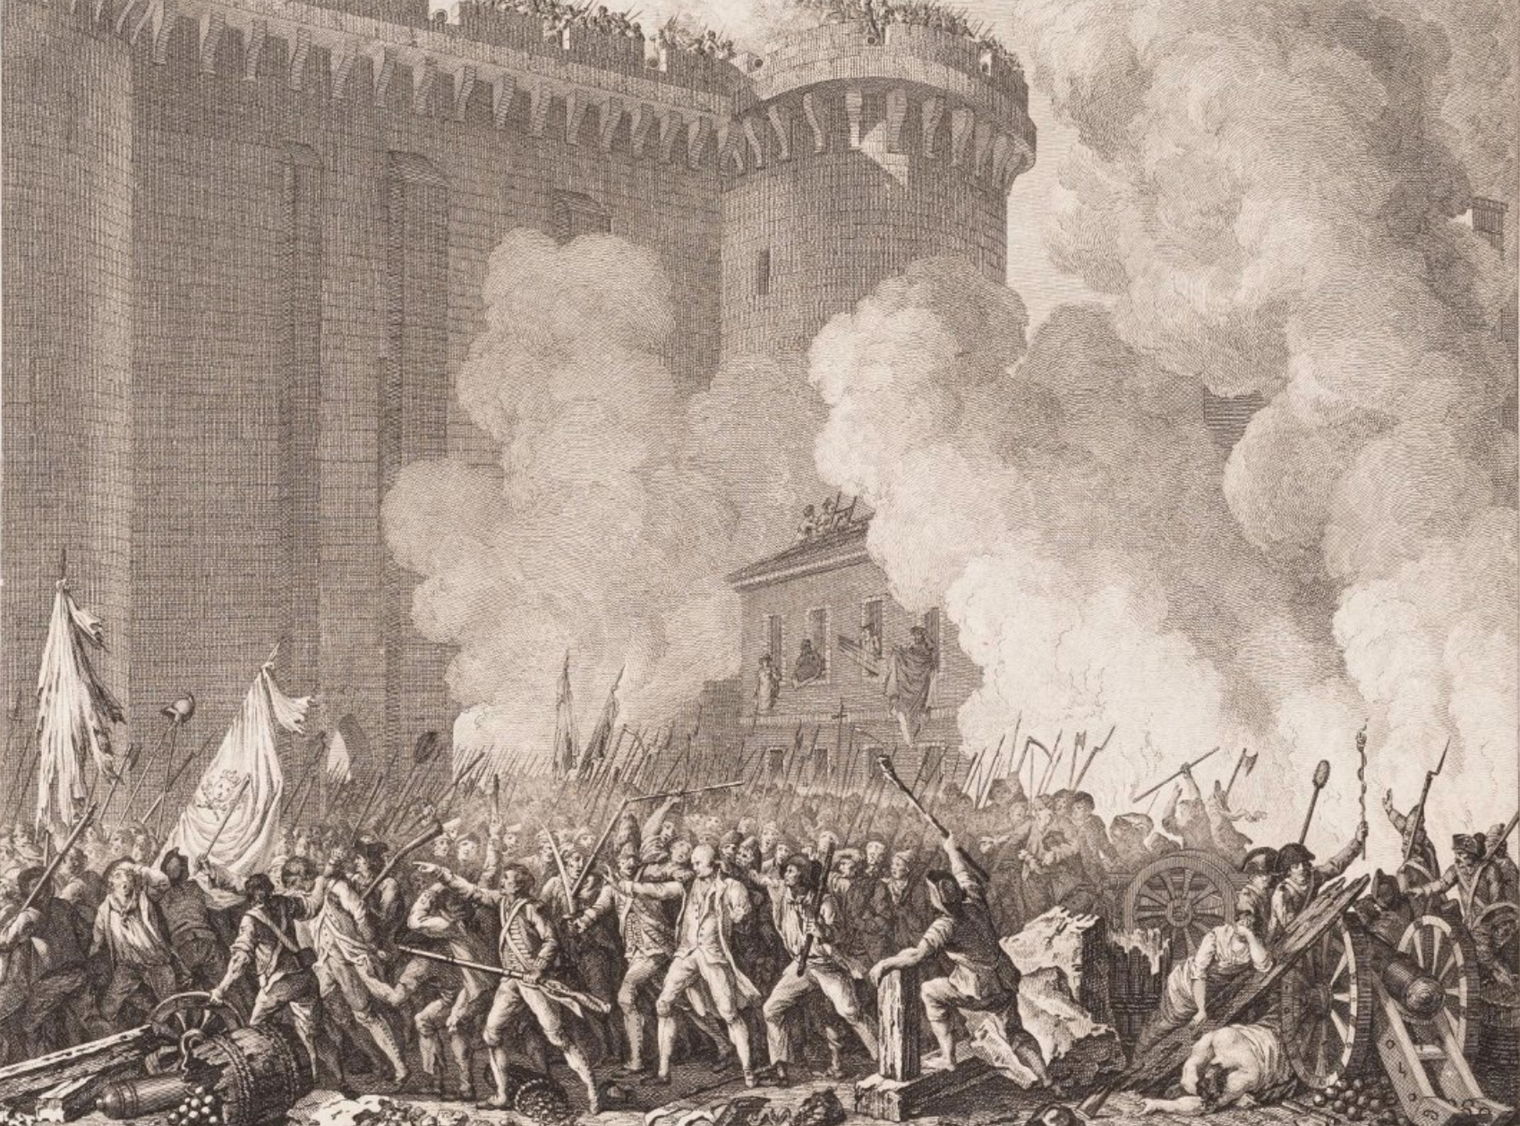 Великие французы. Великая французская революция 1789. Французская революция 1789-1793. Взятие Бастилии 14 июля 1789. Французская революция взятие Бастилии 1789.